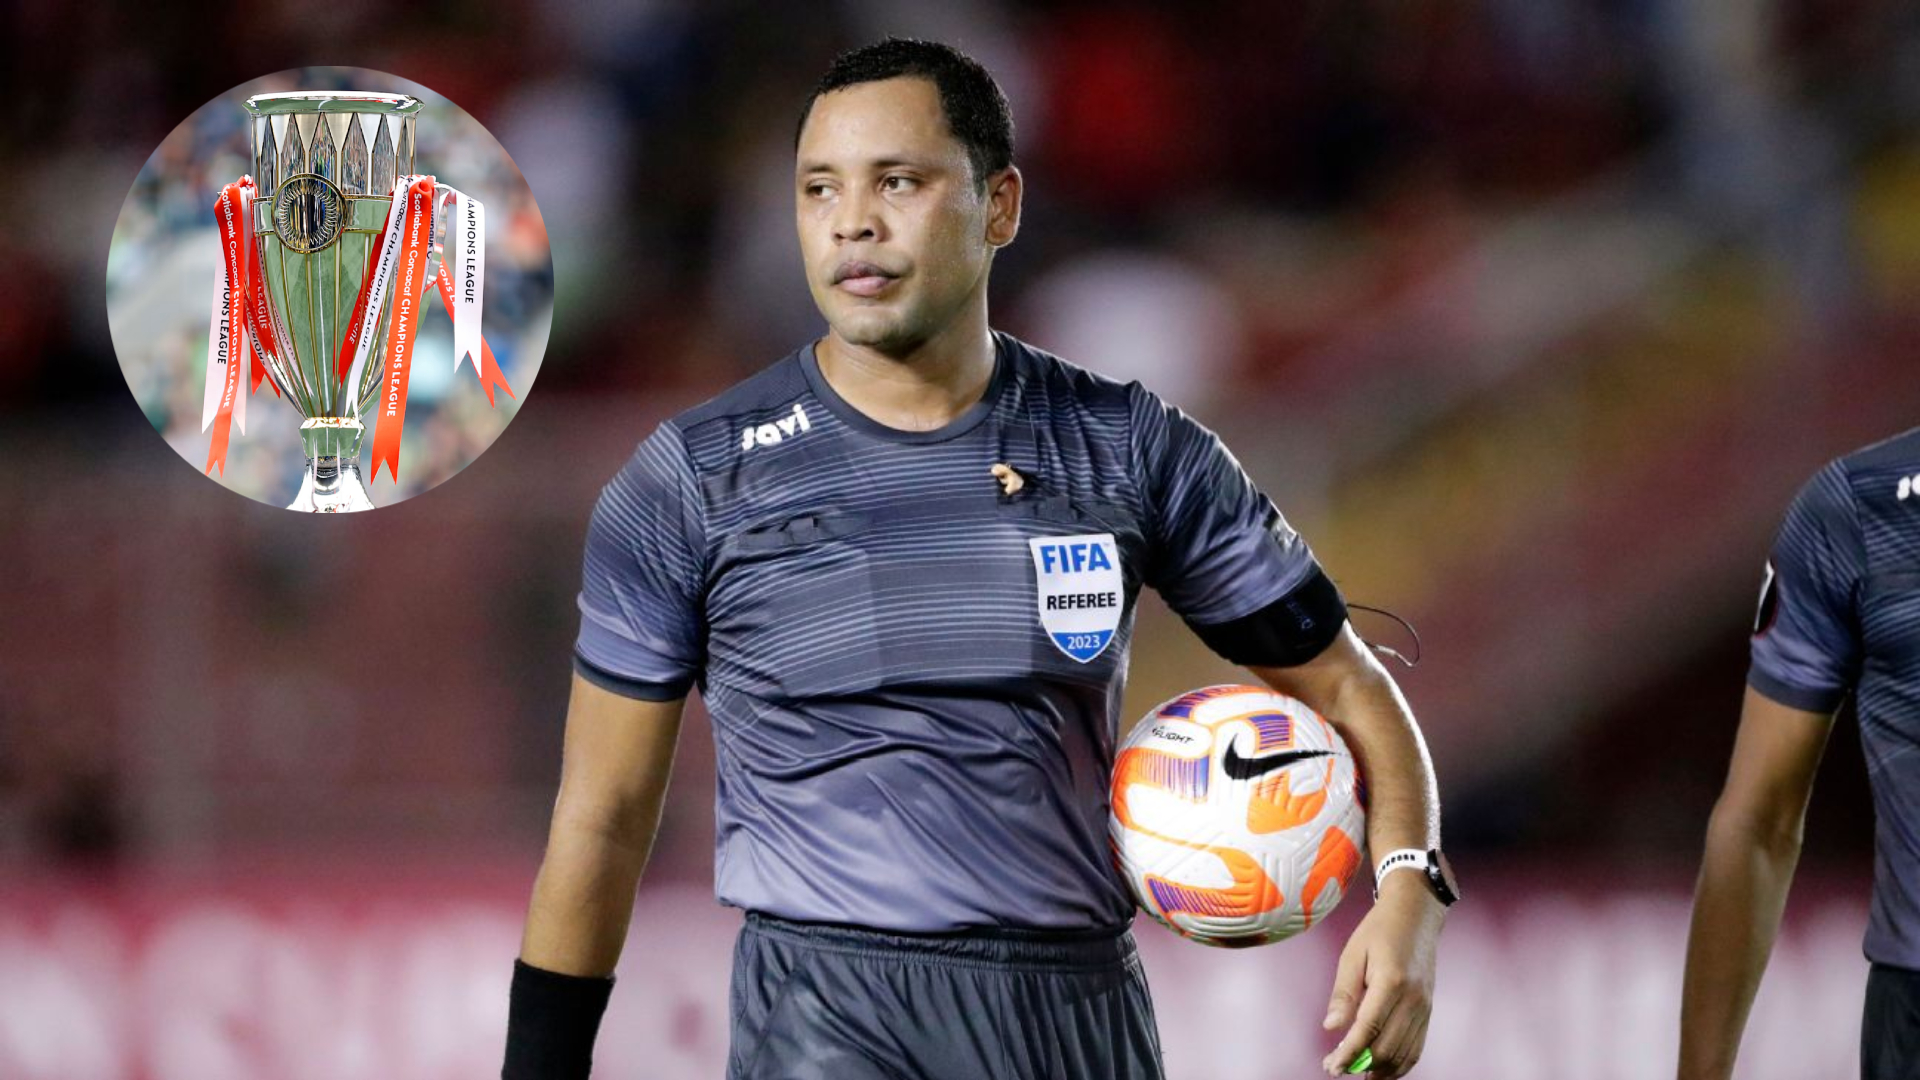 El Columbus Crew vs Tigres abren los Cuartos de Final de la Copa de Campeones de Concacaf, con el hondureño Selvin Brown como árbitro principal, quien garantizará la imparcialidad en el terreno de juego.